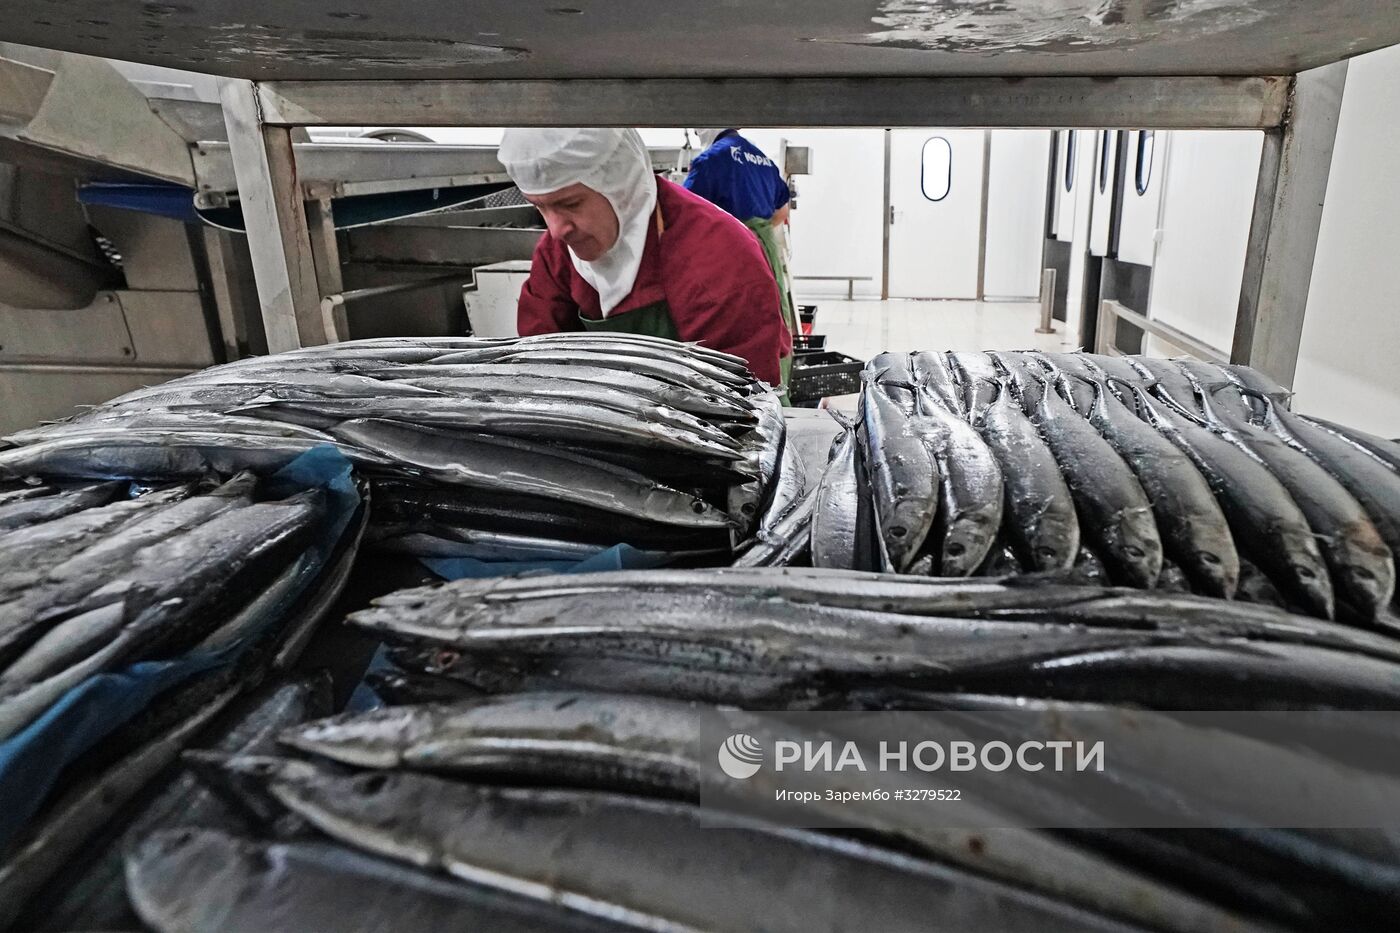 Рыбоперерабатывающий комплекс "Корат" в Калининградской области